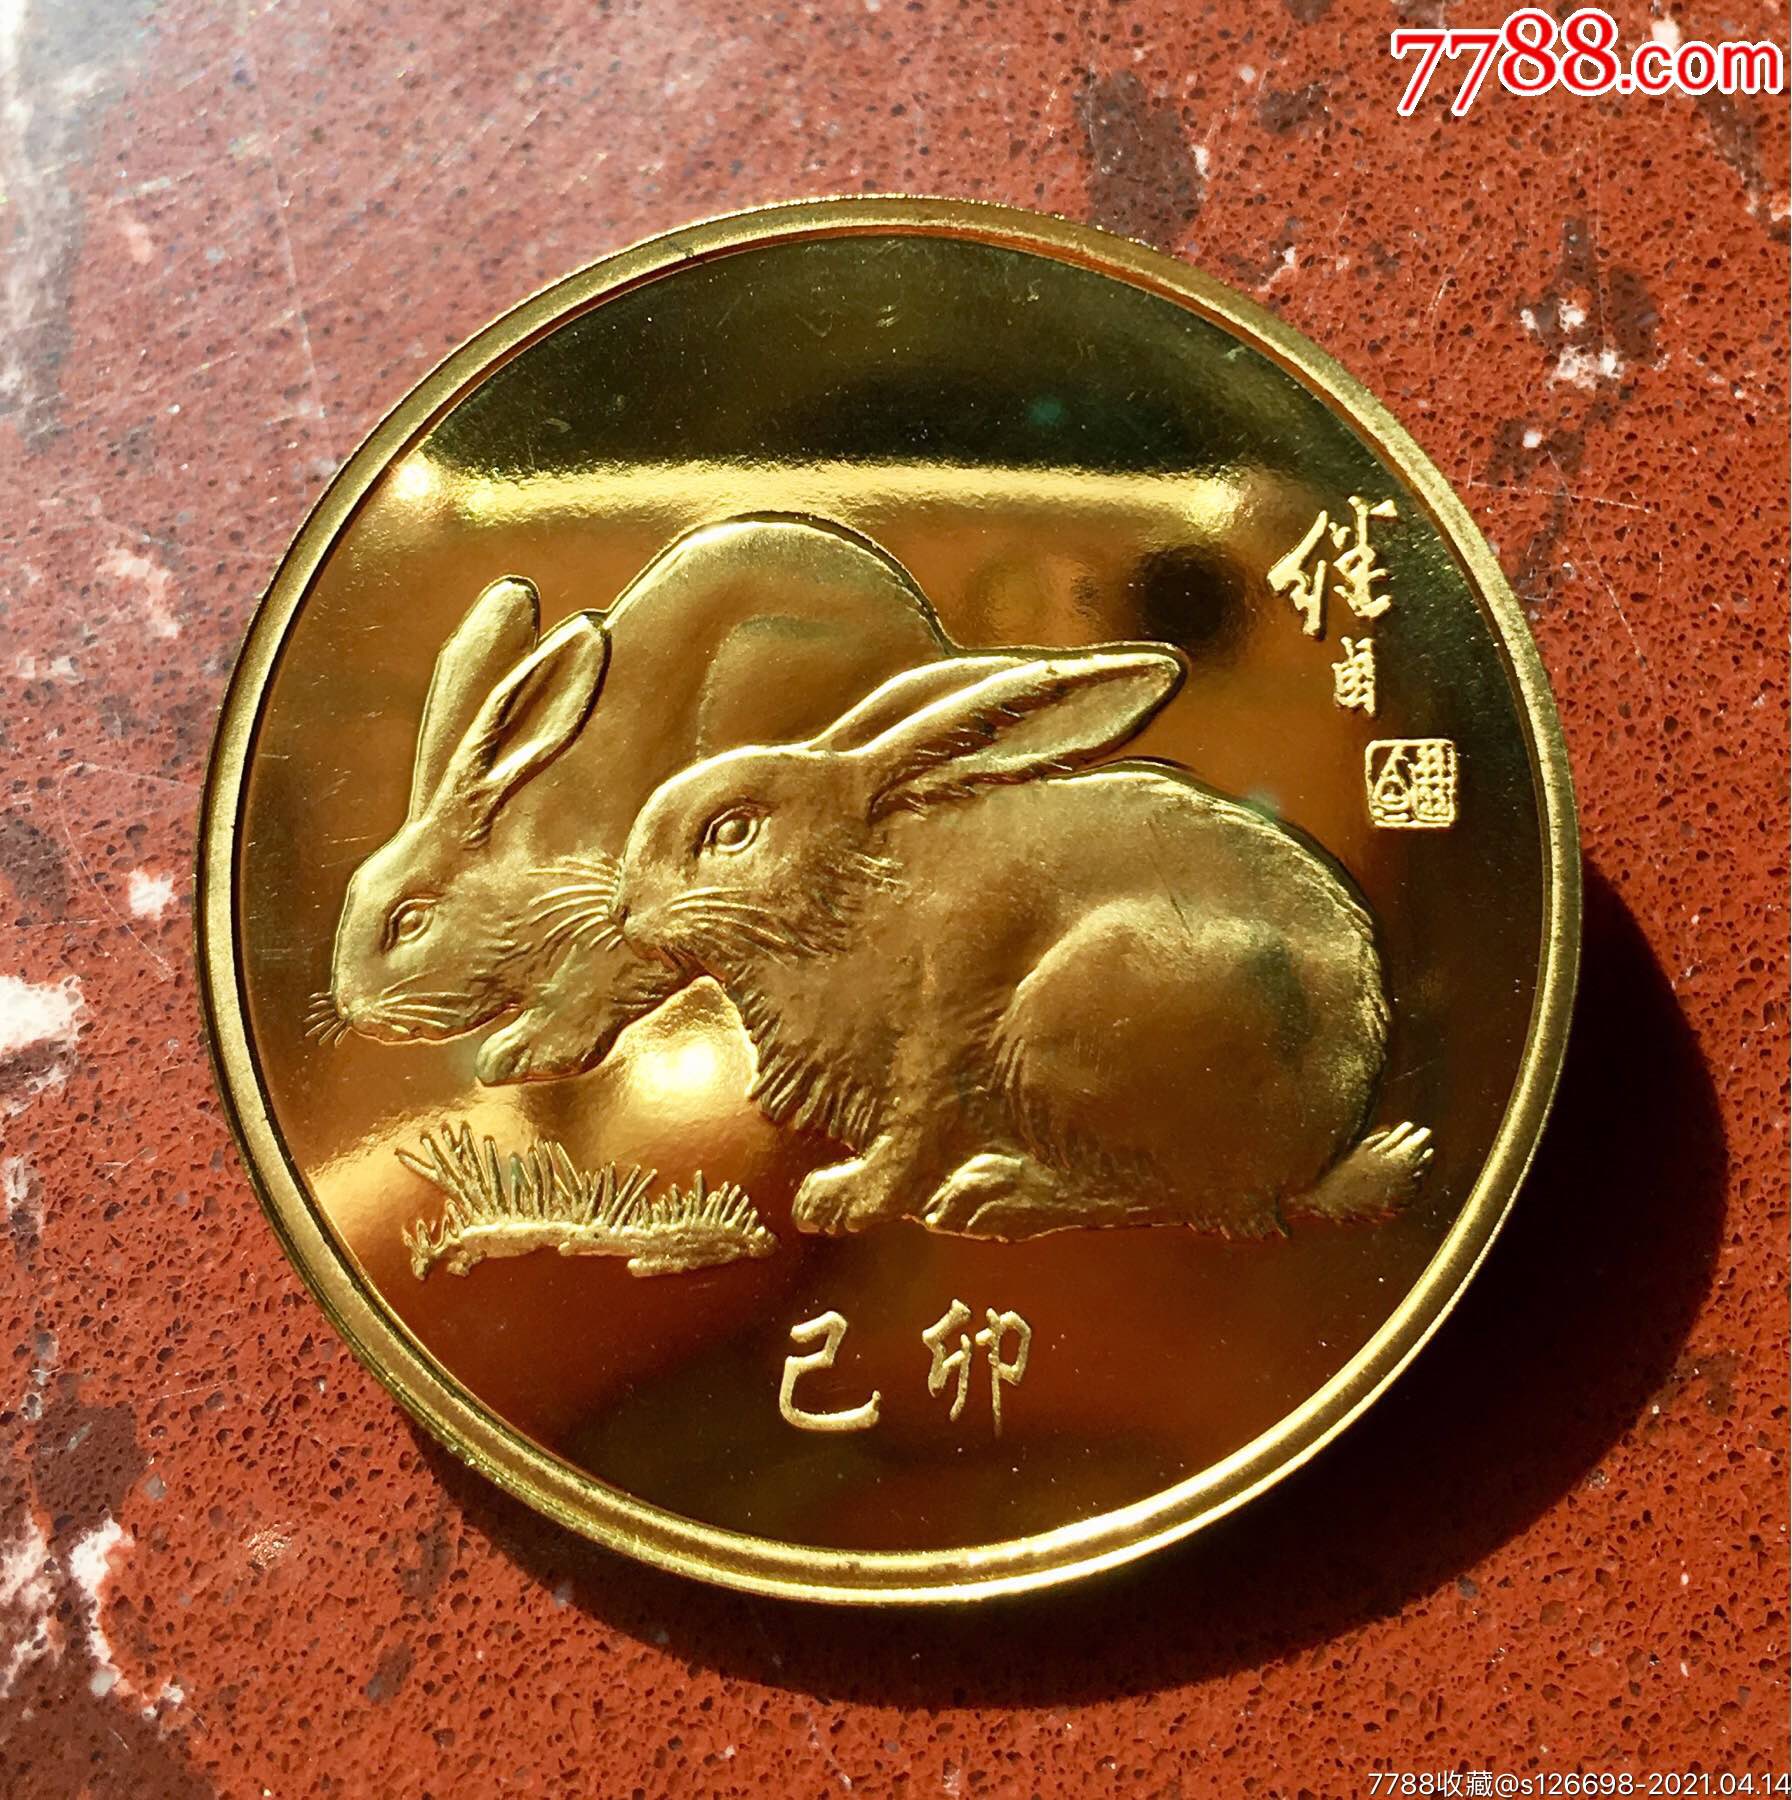 沈阳造币厂1999年40毫米生肖(兔)纪念章!绝少